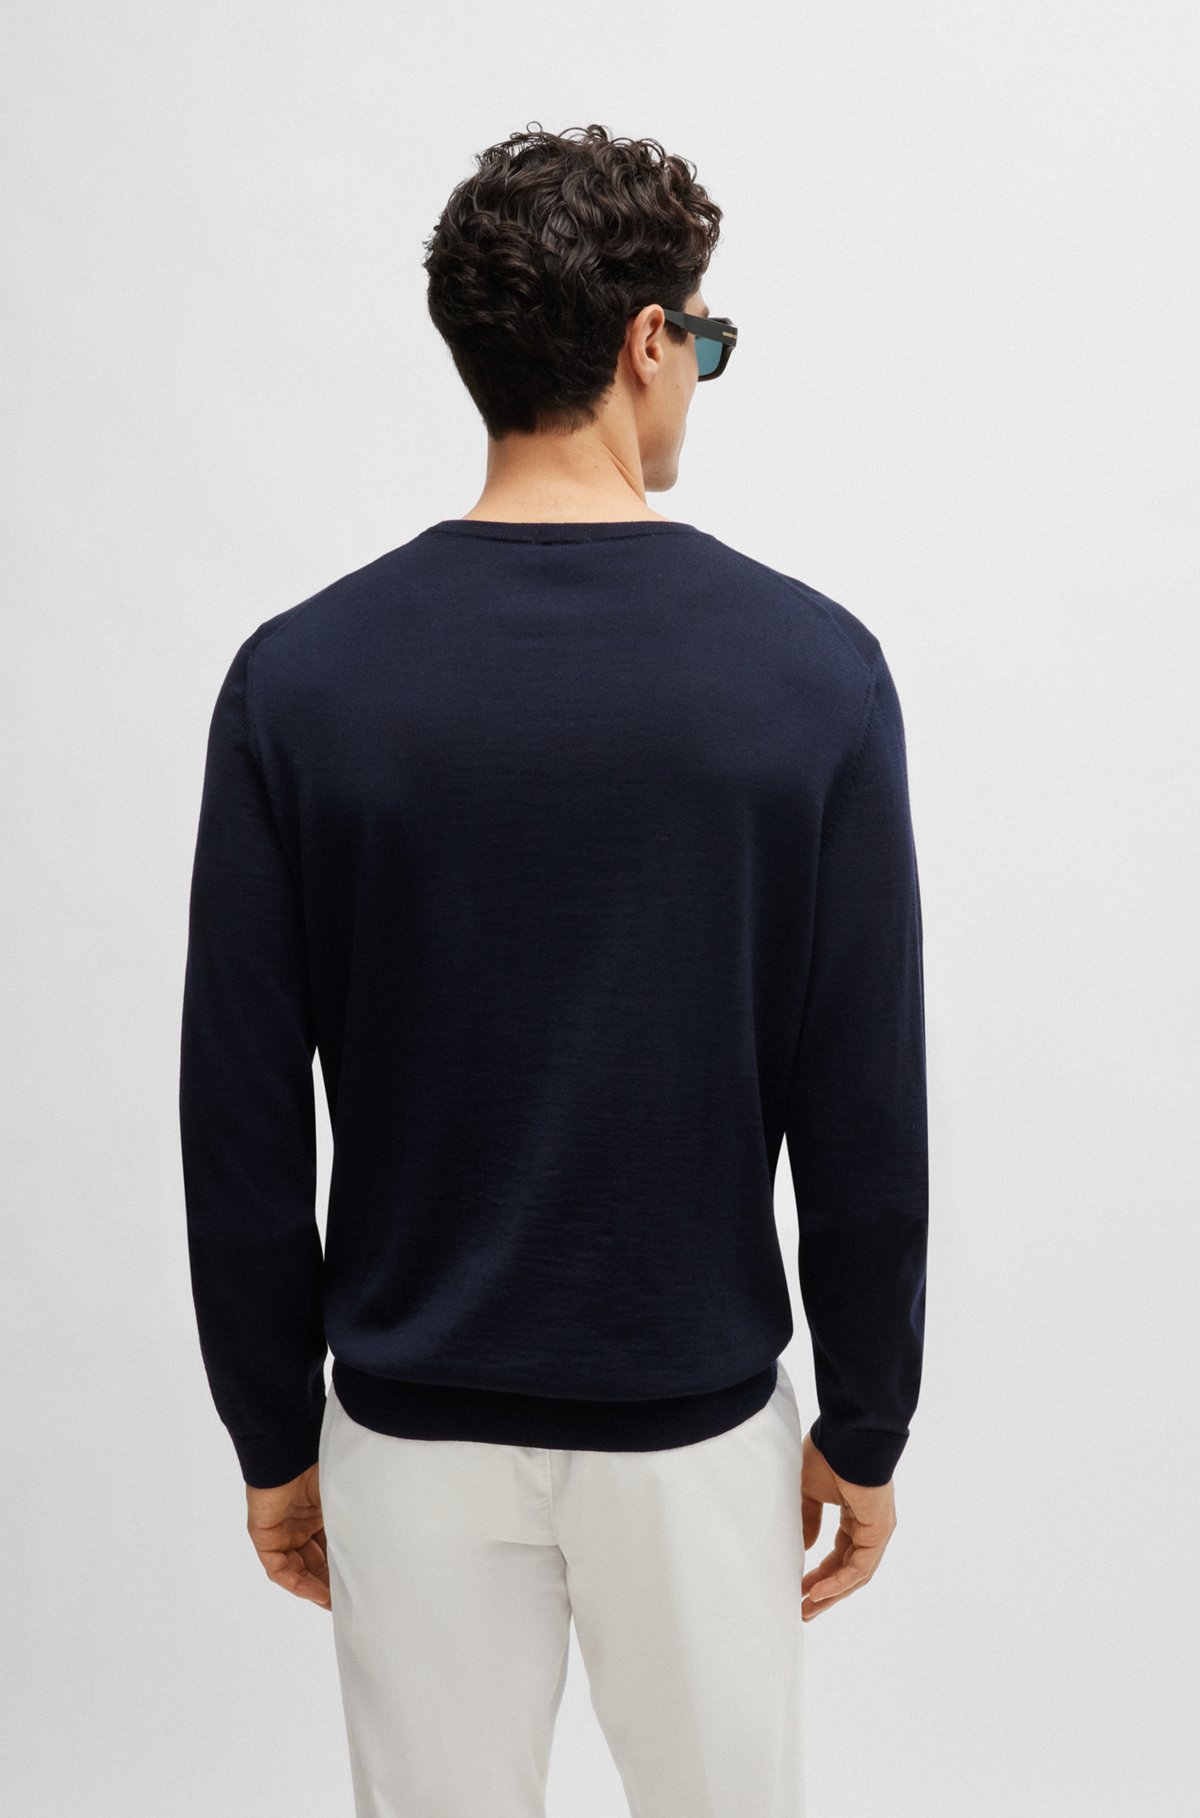 Sweater med slim fit og crew neck i ny uld, Mørkeblå